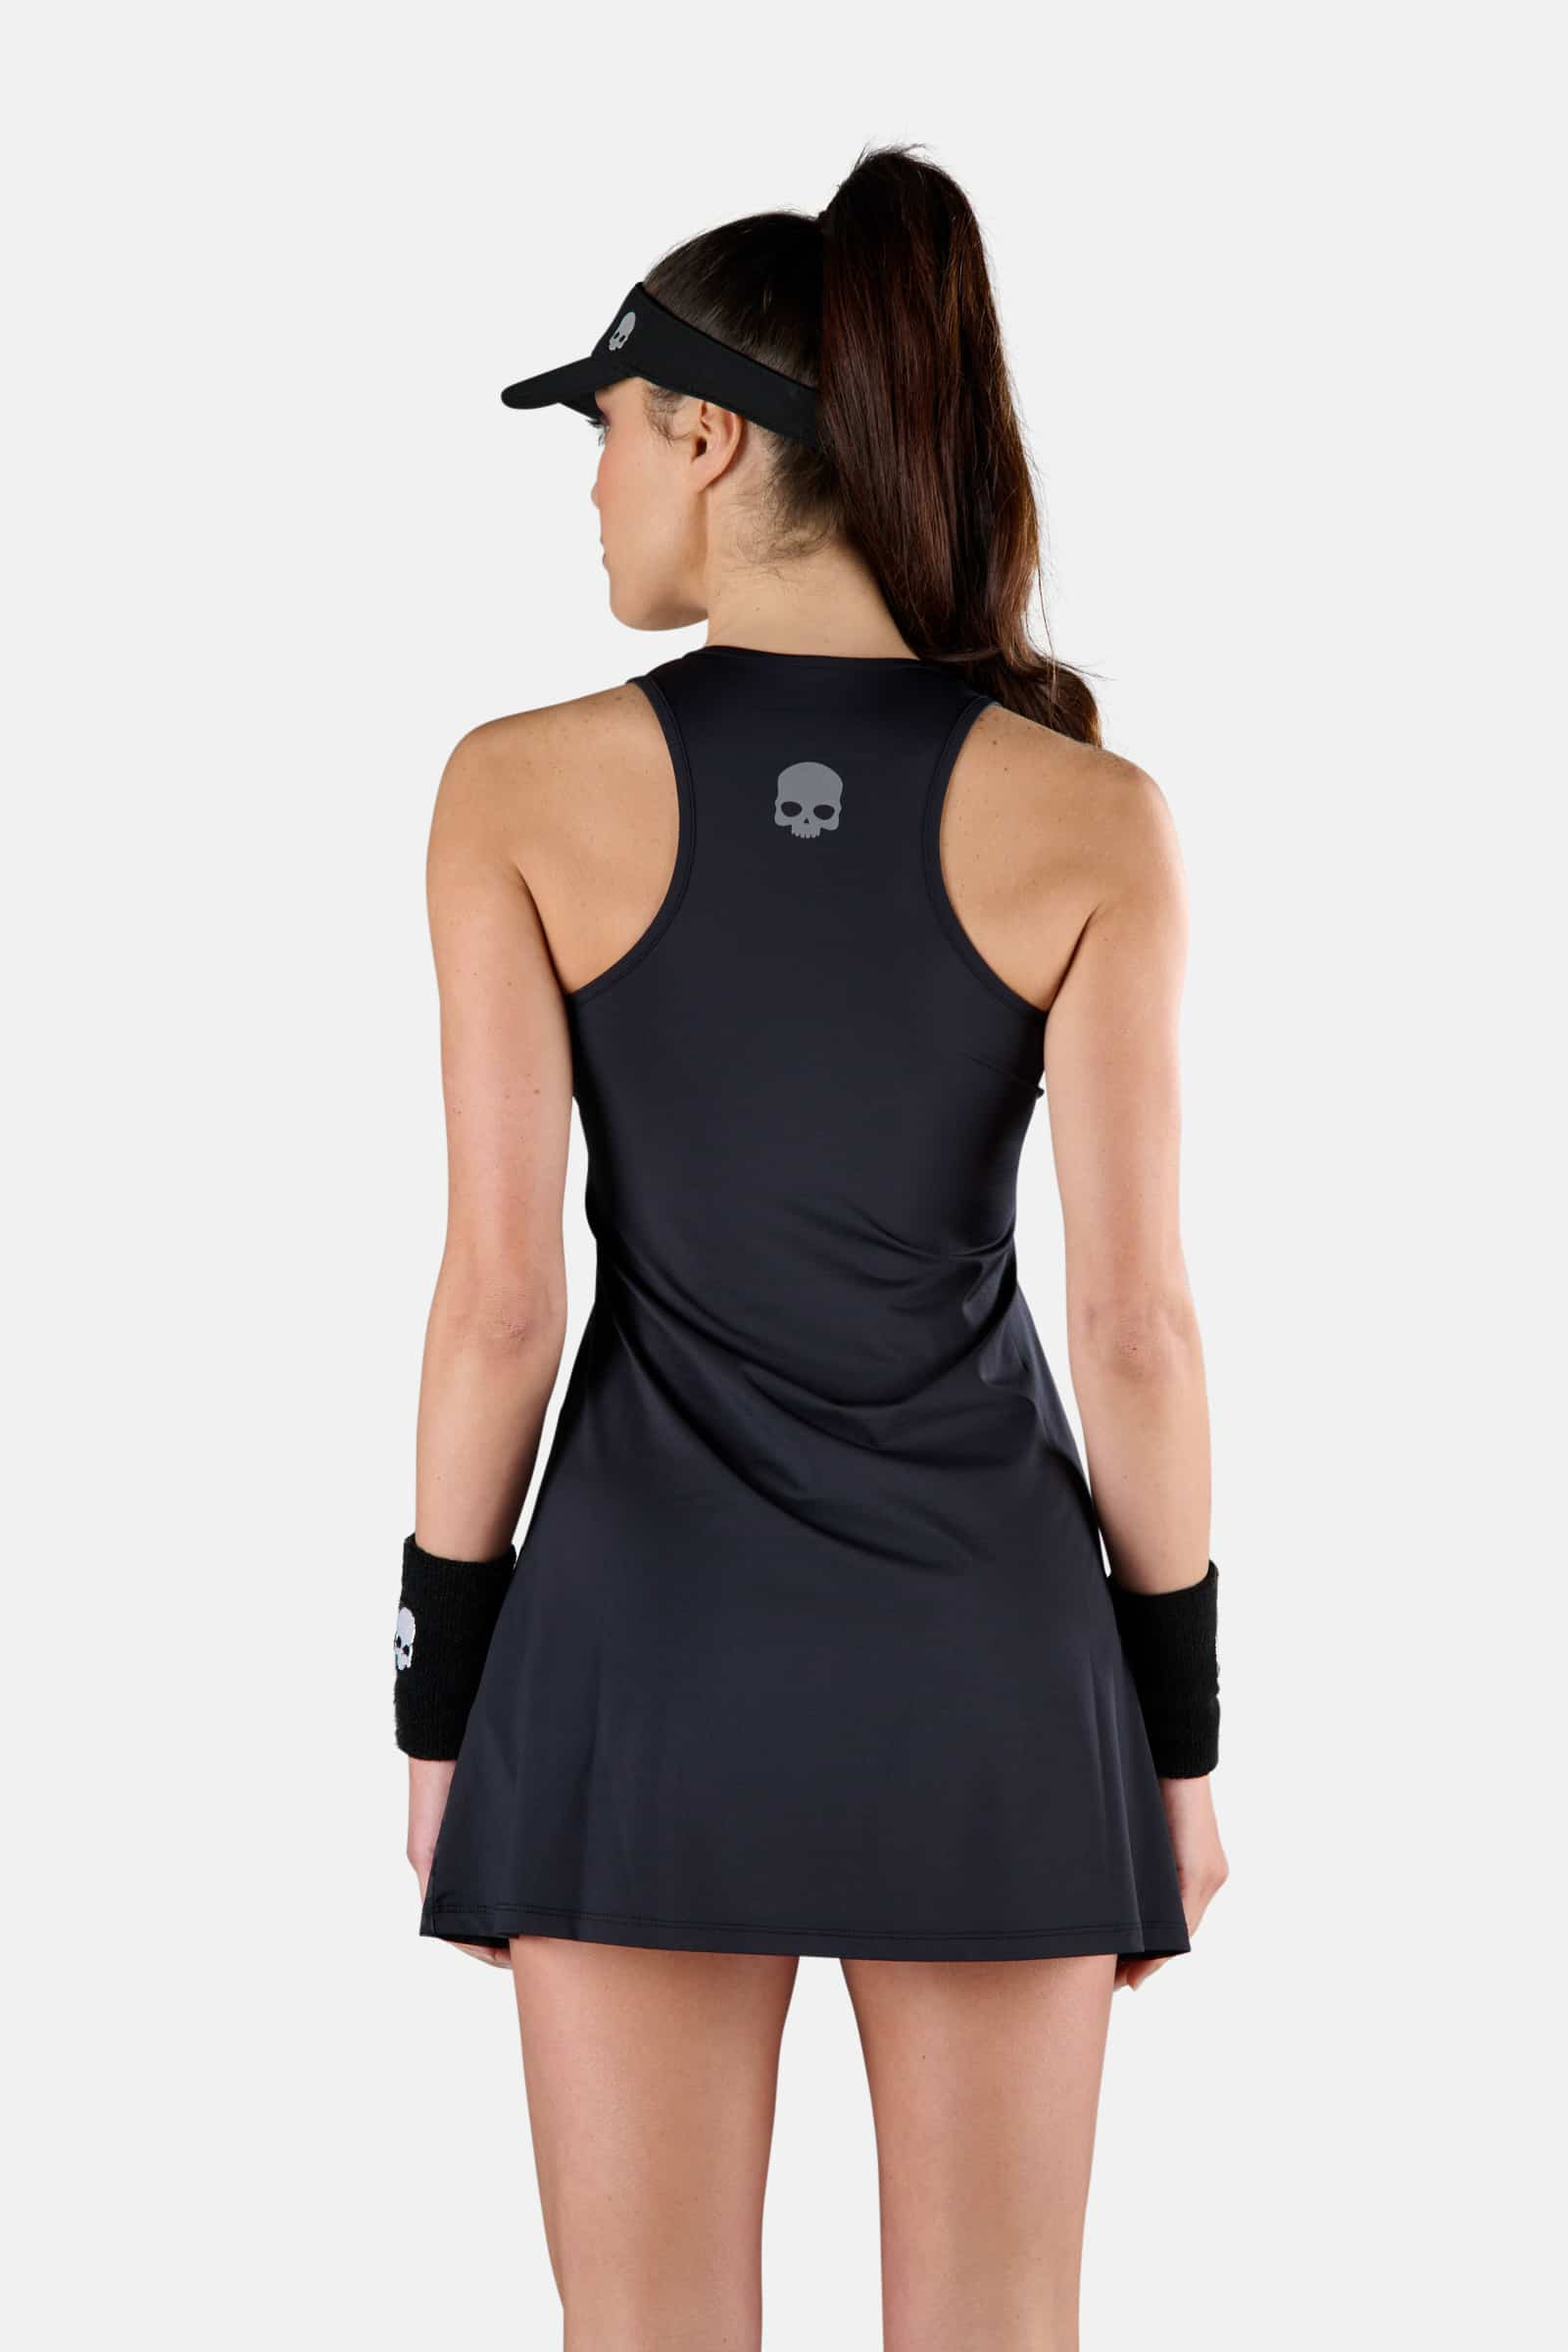 PANTHER TECH DRESS - BLACK,GREY - Hydrogen - Luxury Sportwear